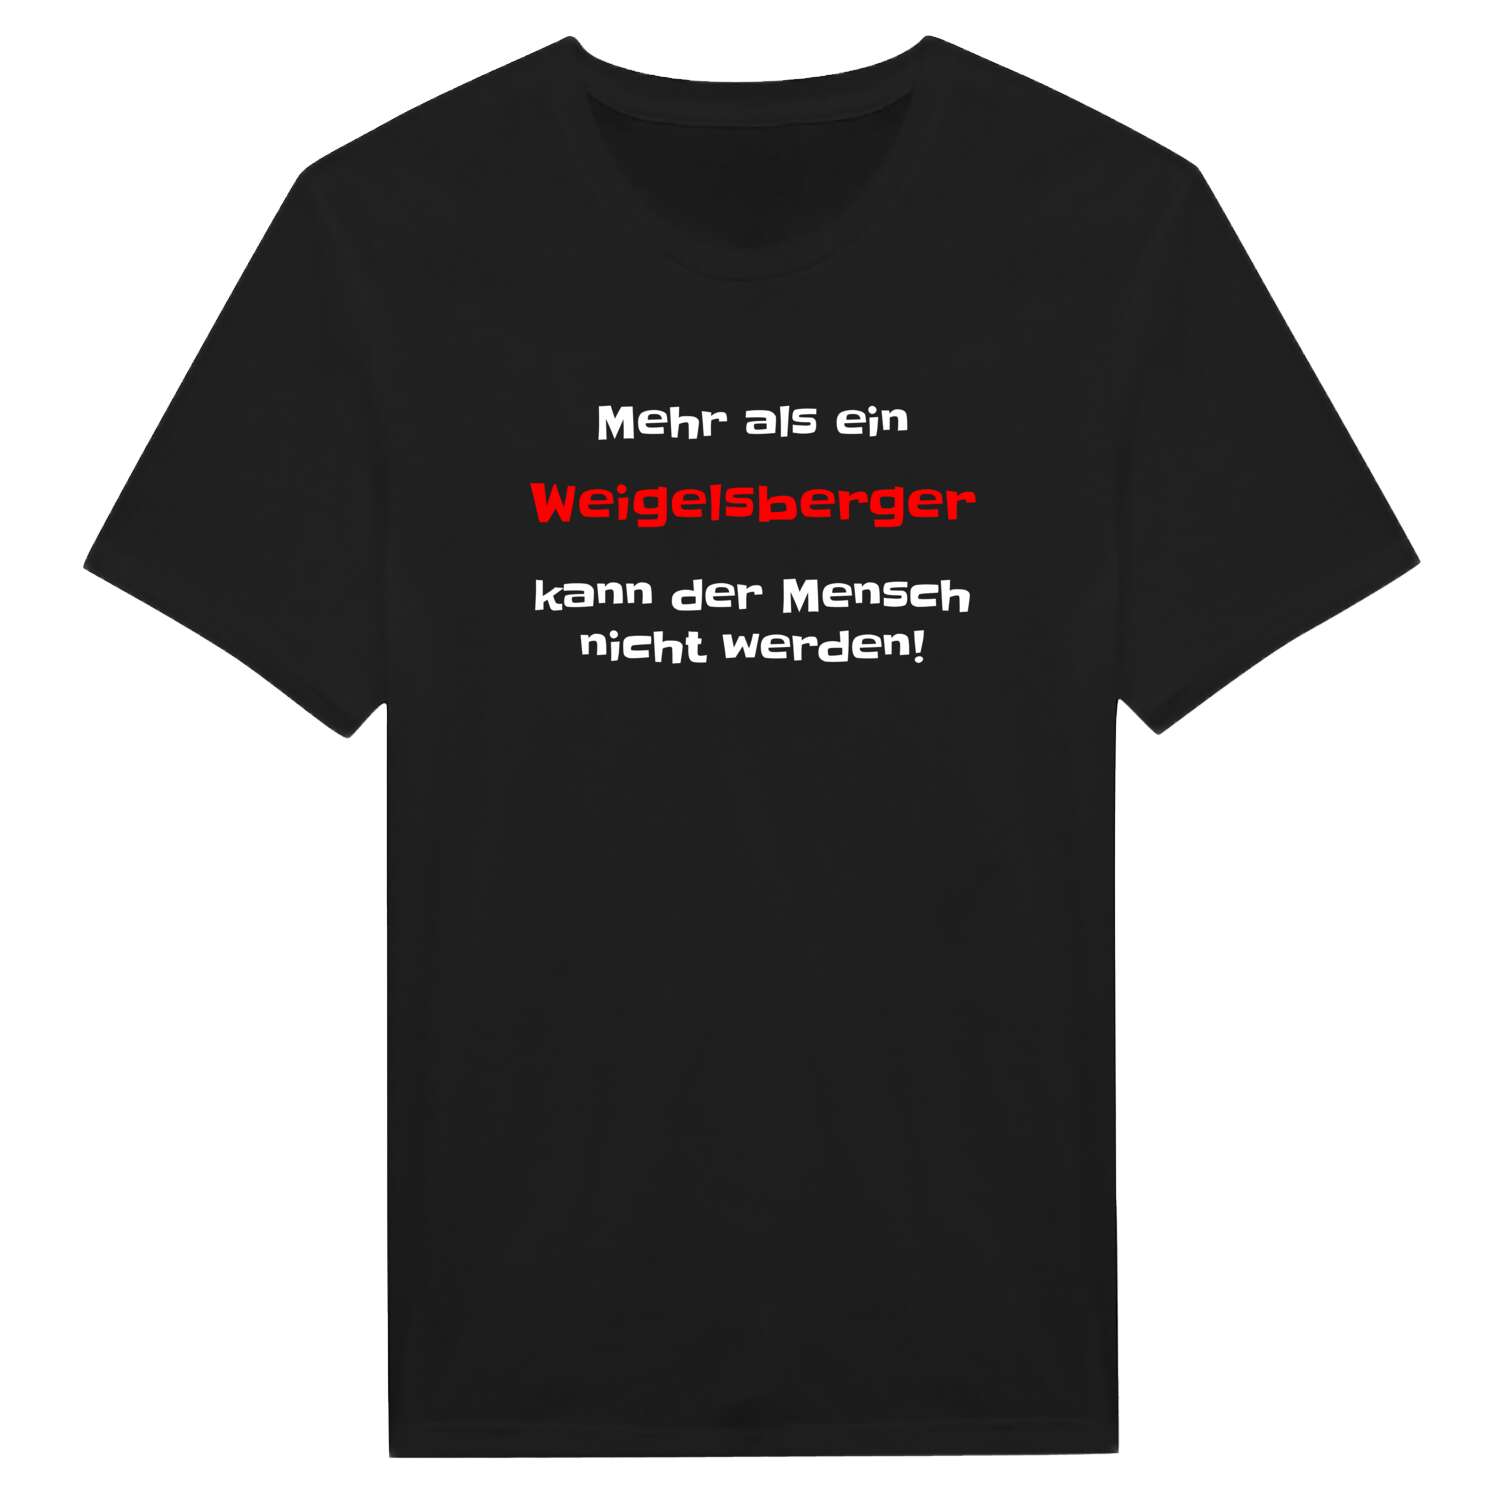 Weigelsberg T-Shirt »Mehr als ein«